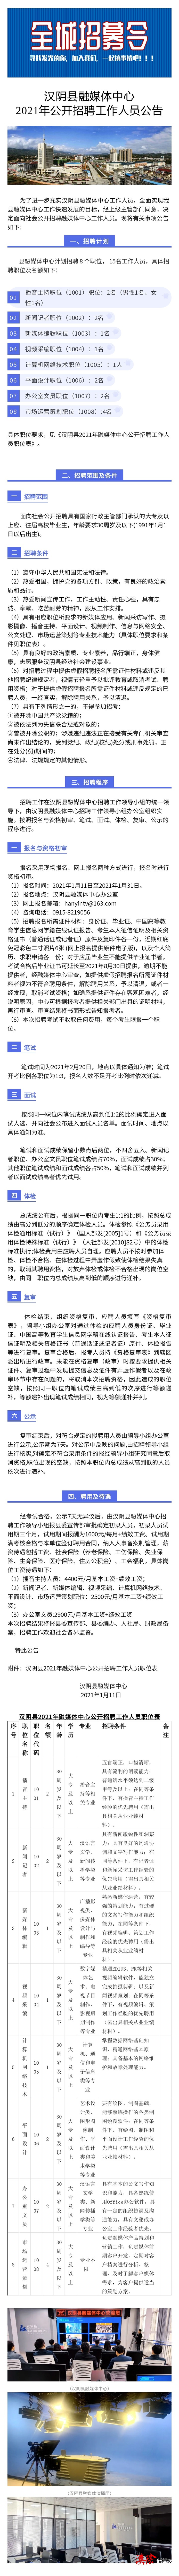 汉阴县融媒体中心2021年公开招聘工作人员公告